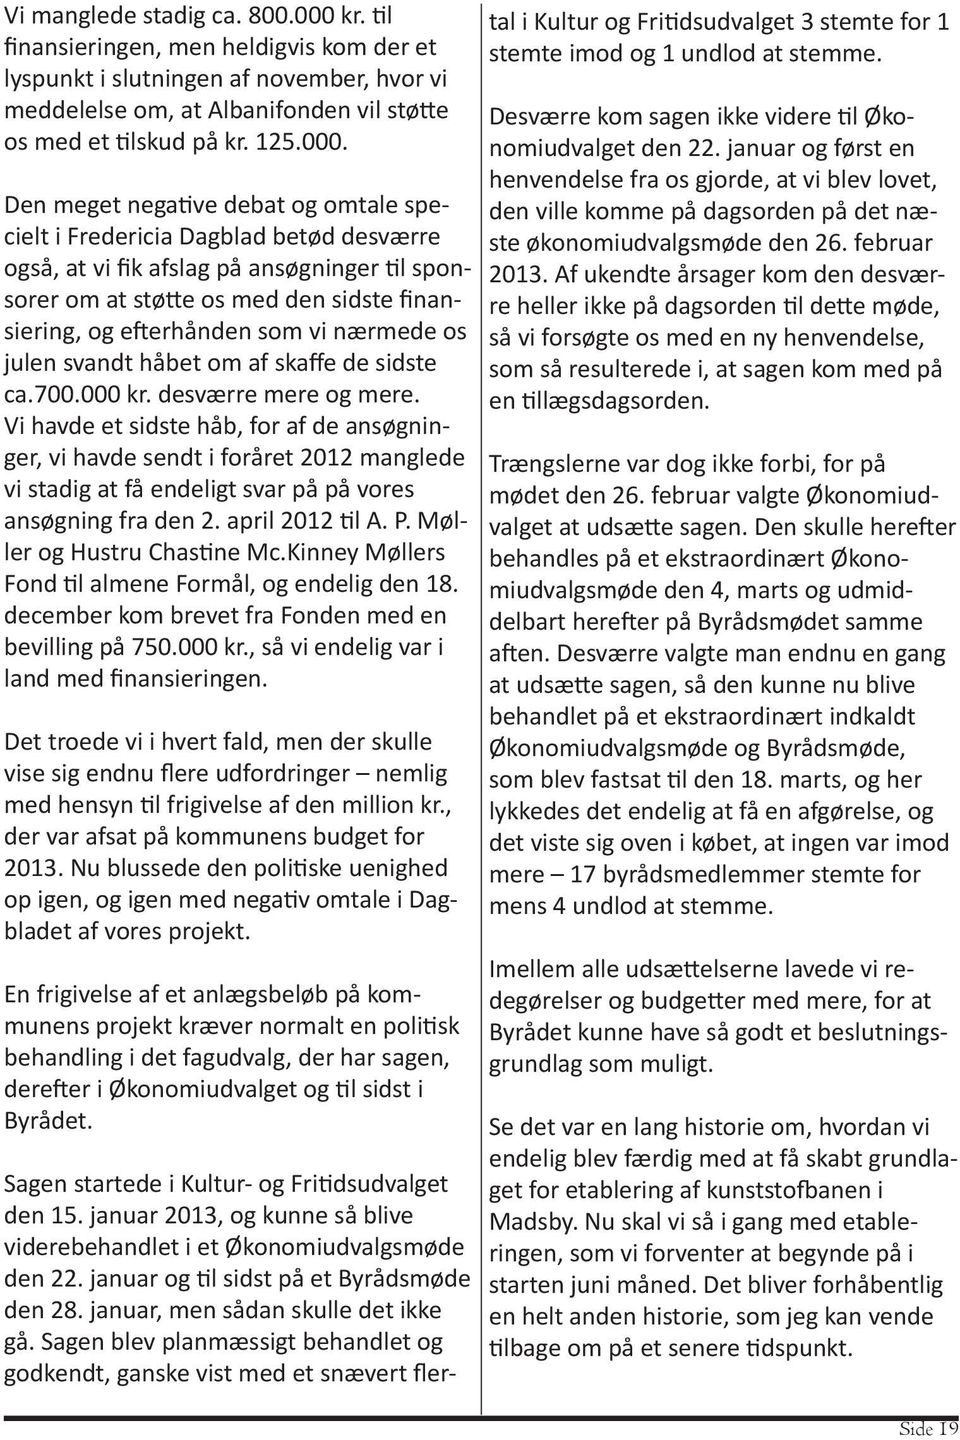 Den meget negative debat og omtale specielt i Fredericia Dagblad betød desværre også, at vi fik afslag på ansøgninger til sponsorer om at støtte os med den sidste finansiering, og efterhånden som vi